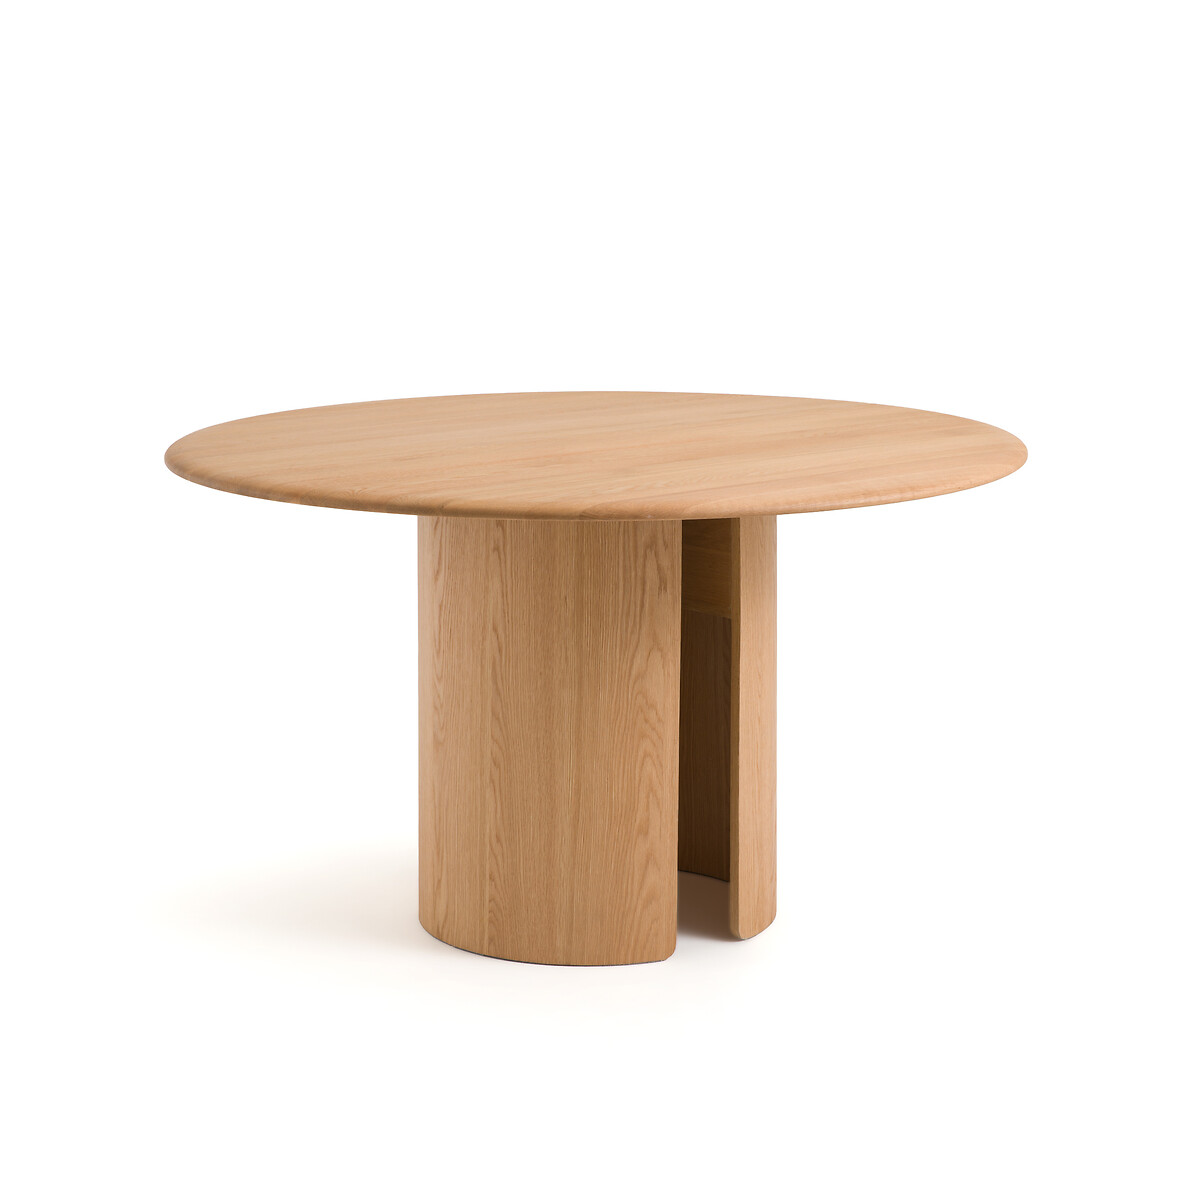 Стол круглый из дуба Sculpta на 6 персон каштановый стол из массива дуба от э галлина torezia на 6 персон каштановый